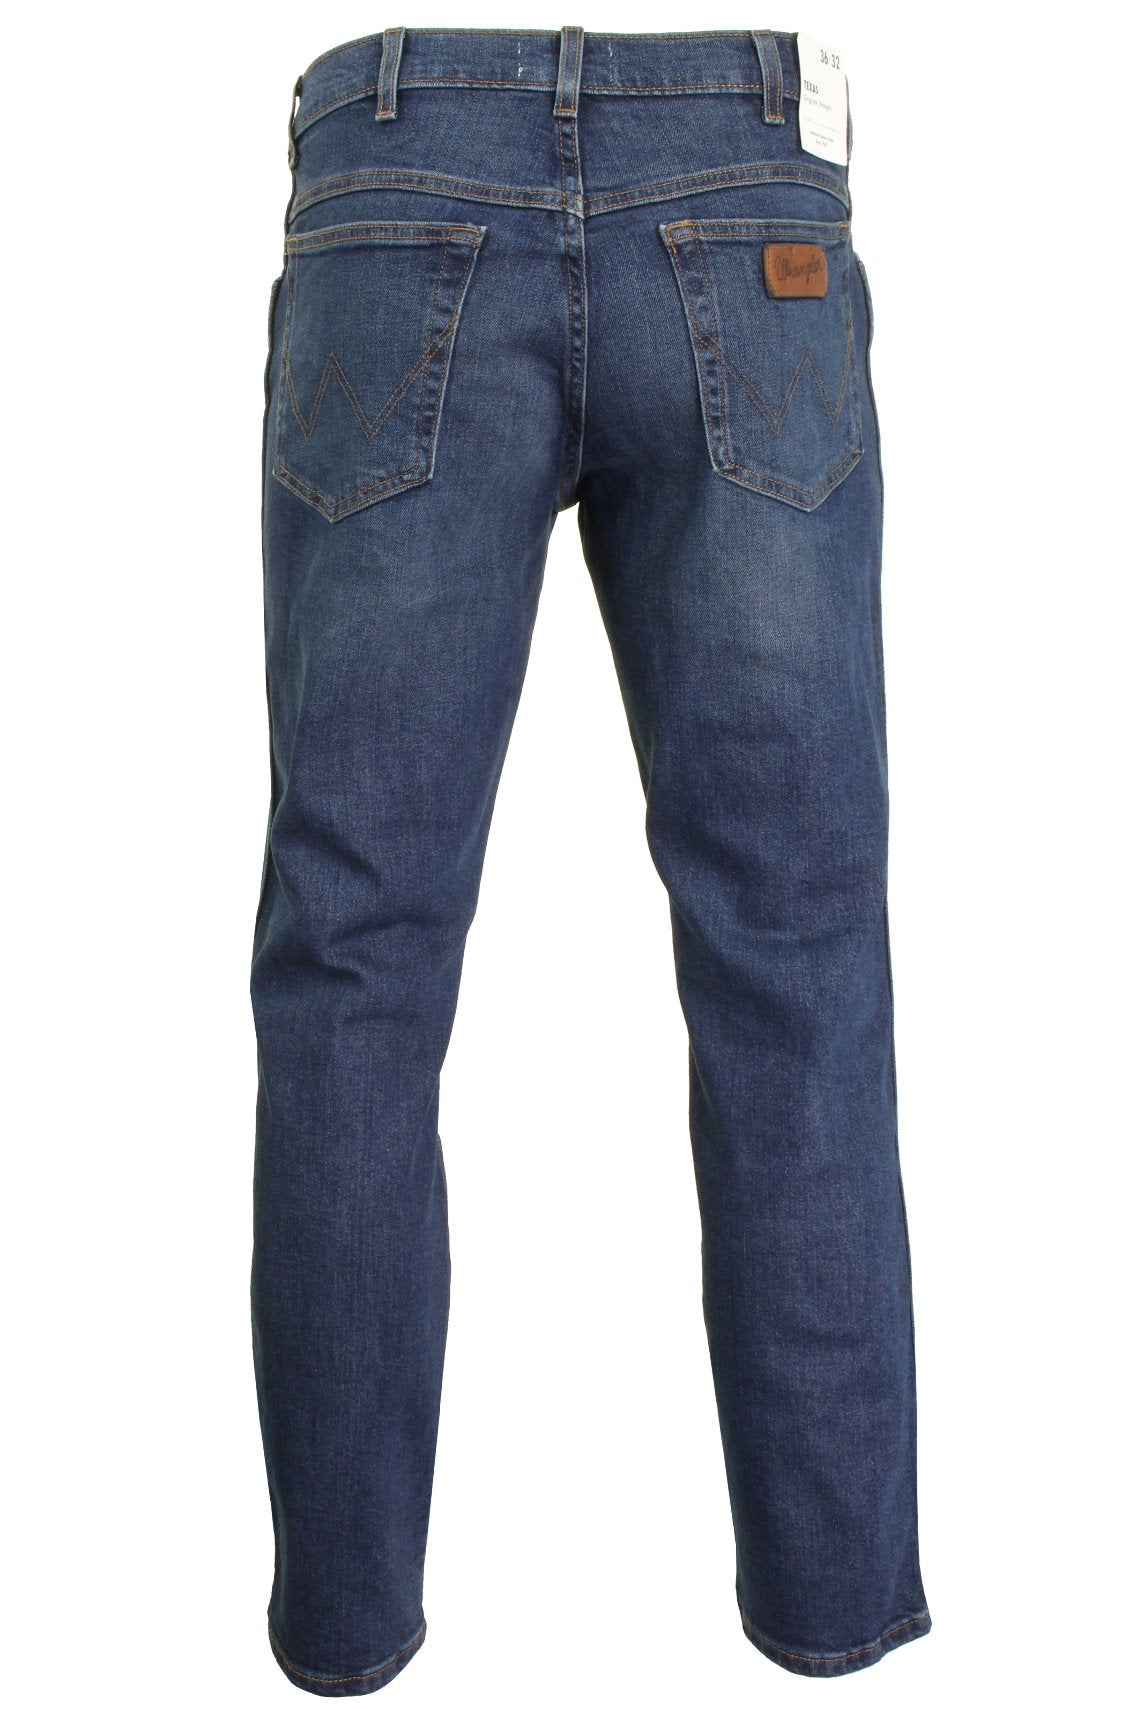 Mens Wrangler 'Texas' Jeans - Denim Stretch - Original Straight Fit, 03, W121-Core, Indigo Wit